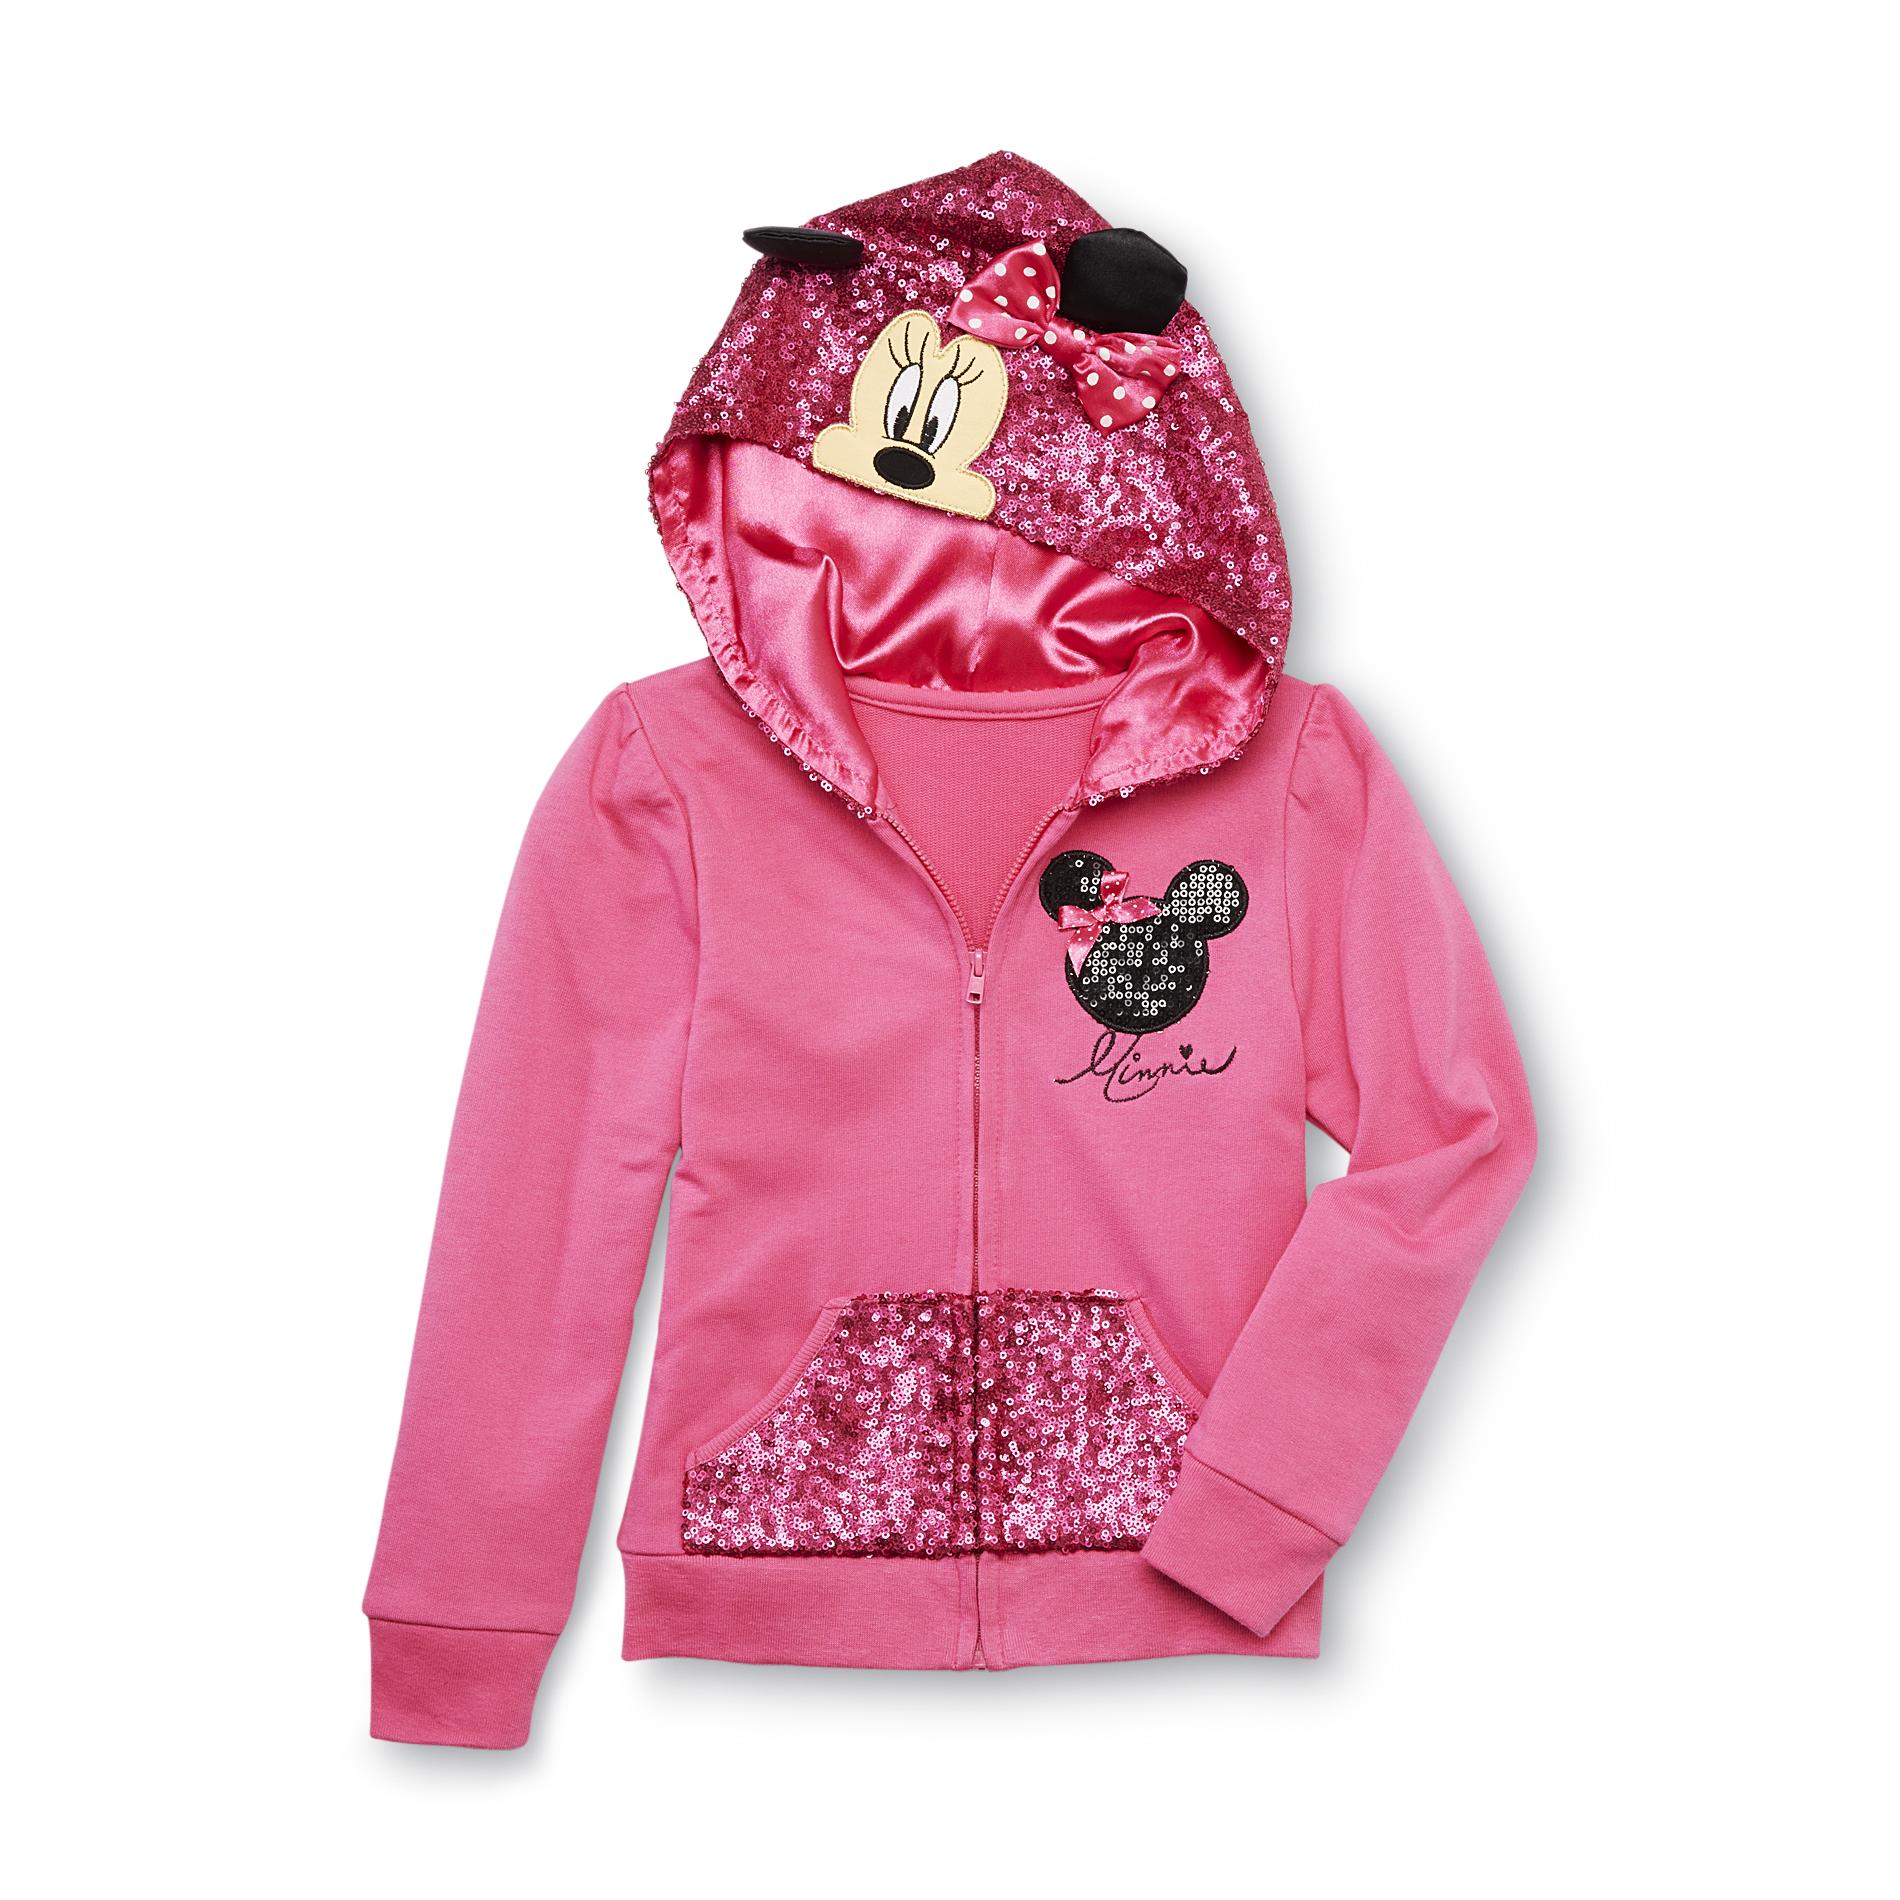 Disney Girl's Hoodie Jacket - Minnie Mouse